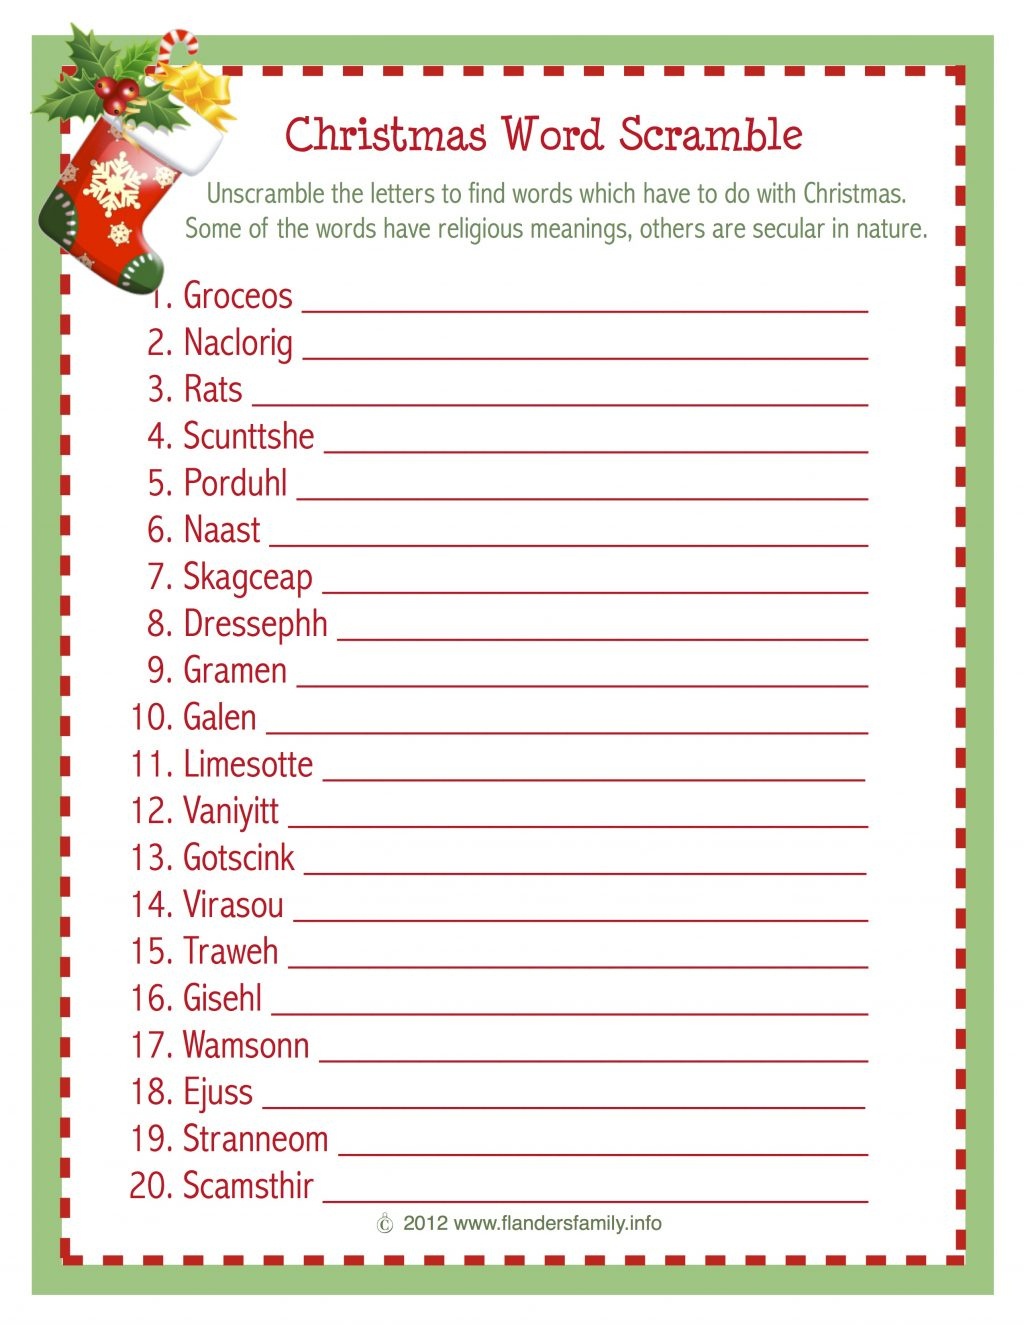 Christmas Word Scramble (Free Printable) - Flanders Family Homelife - Christian Christmas Games Free Printable